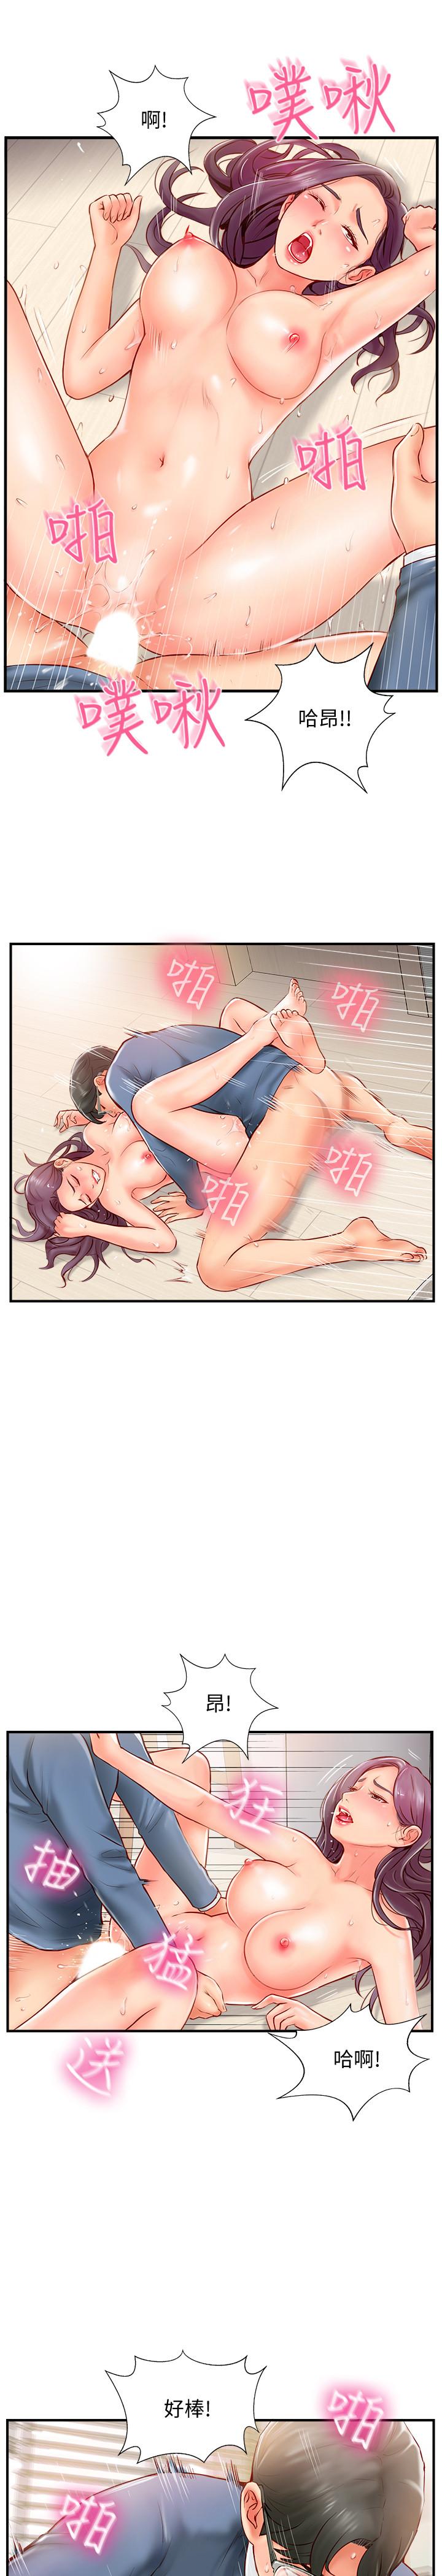 韩国污漫画 完美新伴侶 第7话-淫乱不堪的女人 19